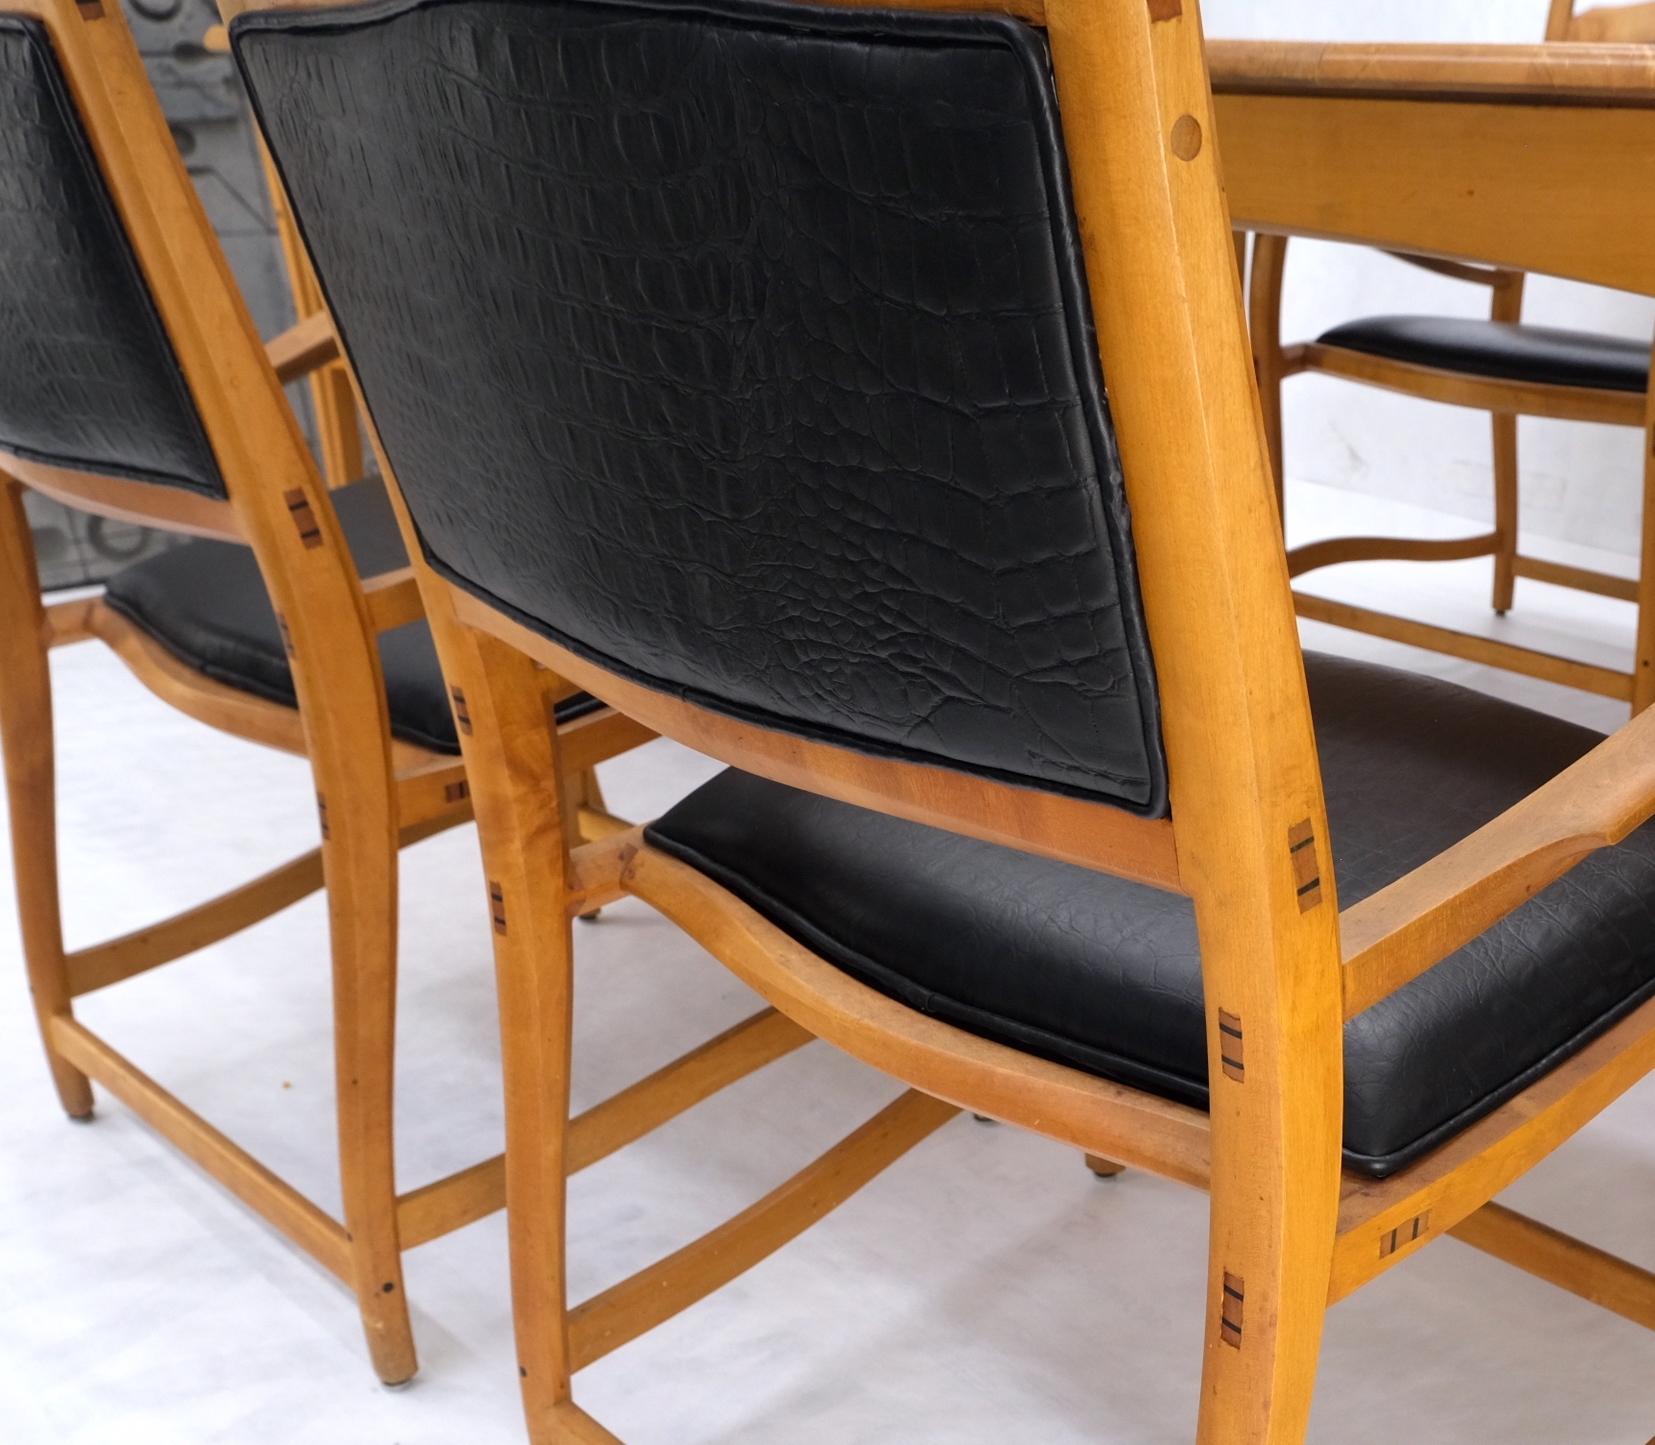 Massive curly oder Vogelaugenahorn Tisch 6 Stühle Bank handgefertigt gemeinsam Studio Esstisch-Set mint! 
Sehr komfortable Sitze!
Vom Künstler signiert und datiert 1981.
Großartige Ergänzung oder Dekor Spiel zu Nakashima Liebhaber